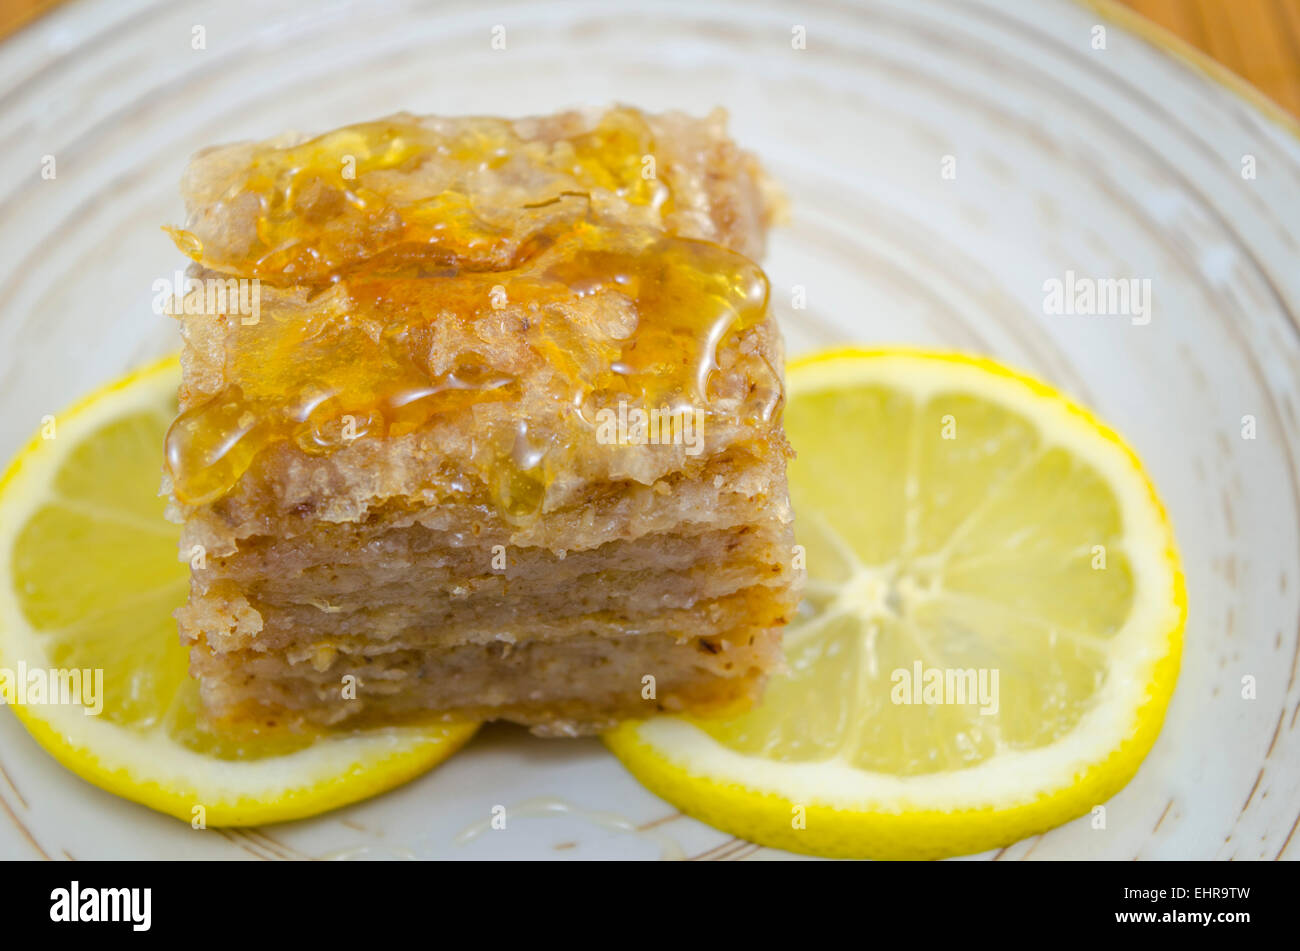 Baklava juteuse sur une assiette décorée avec des tranches de citron, prêts à être mangés Banque D'Images